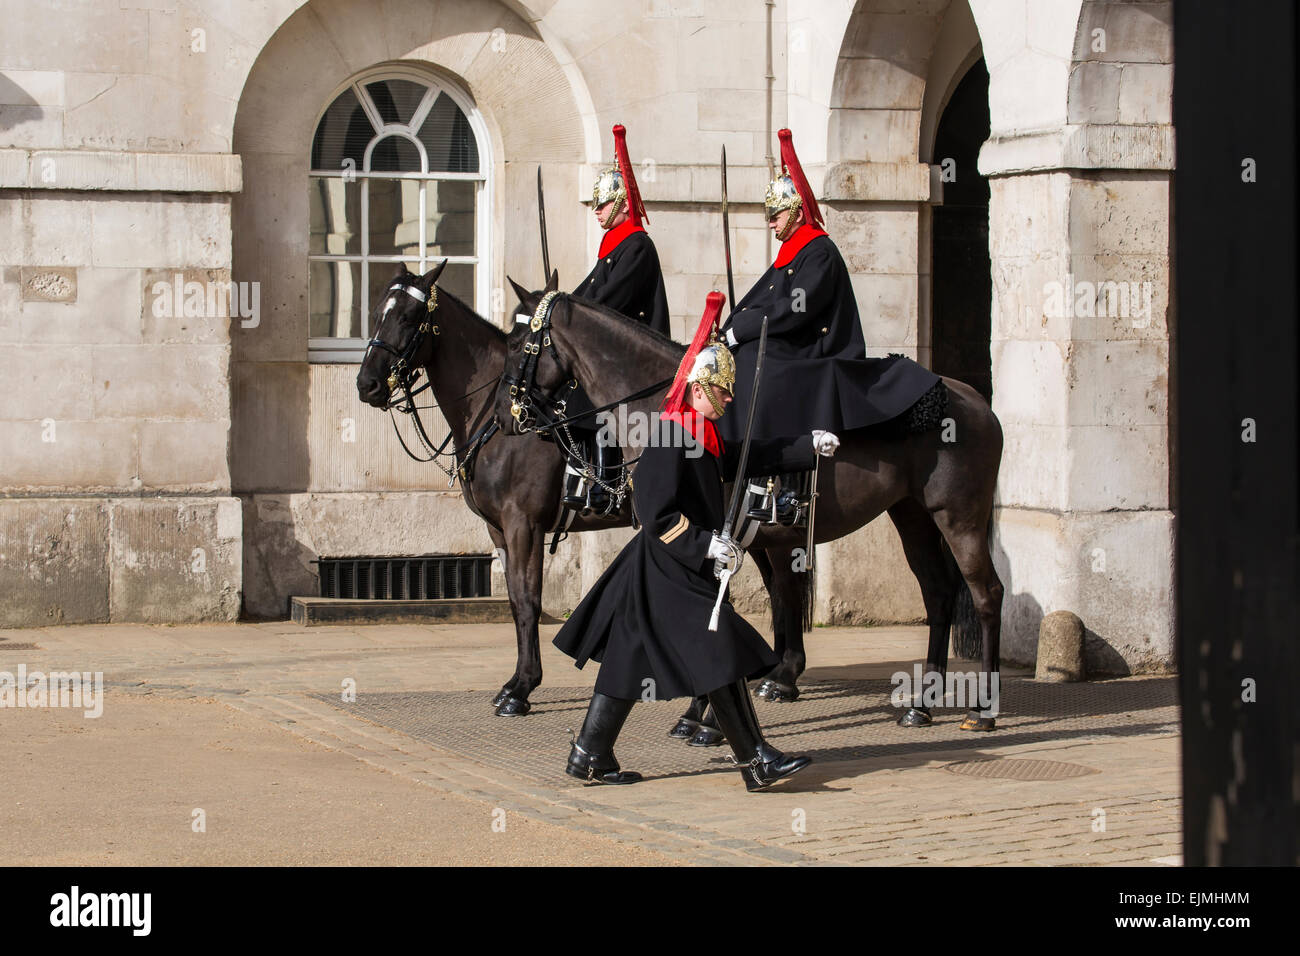 Royal Horse Guards en service à cheval, Londres Banque D'Images